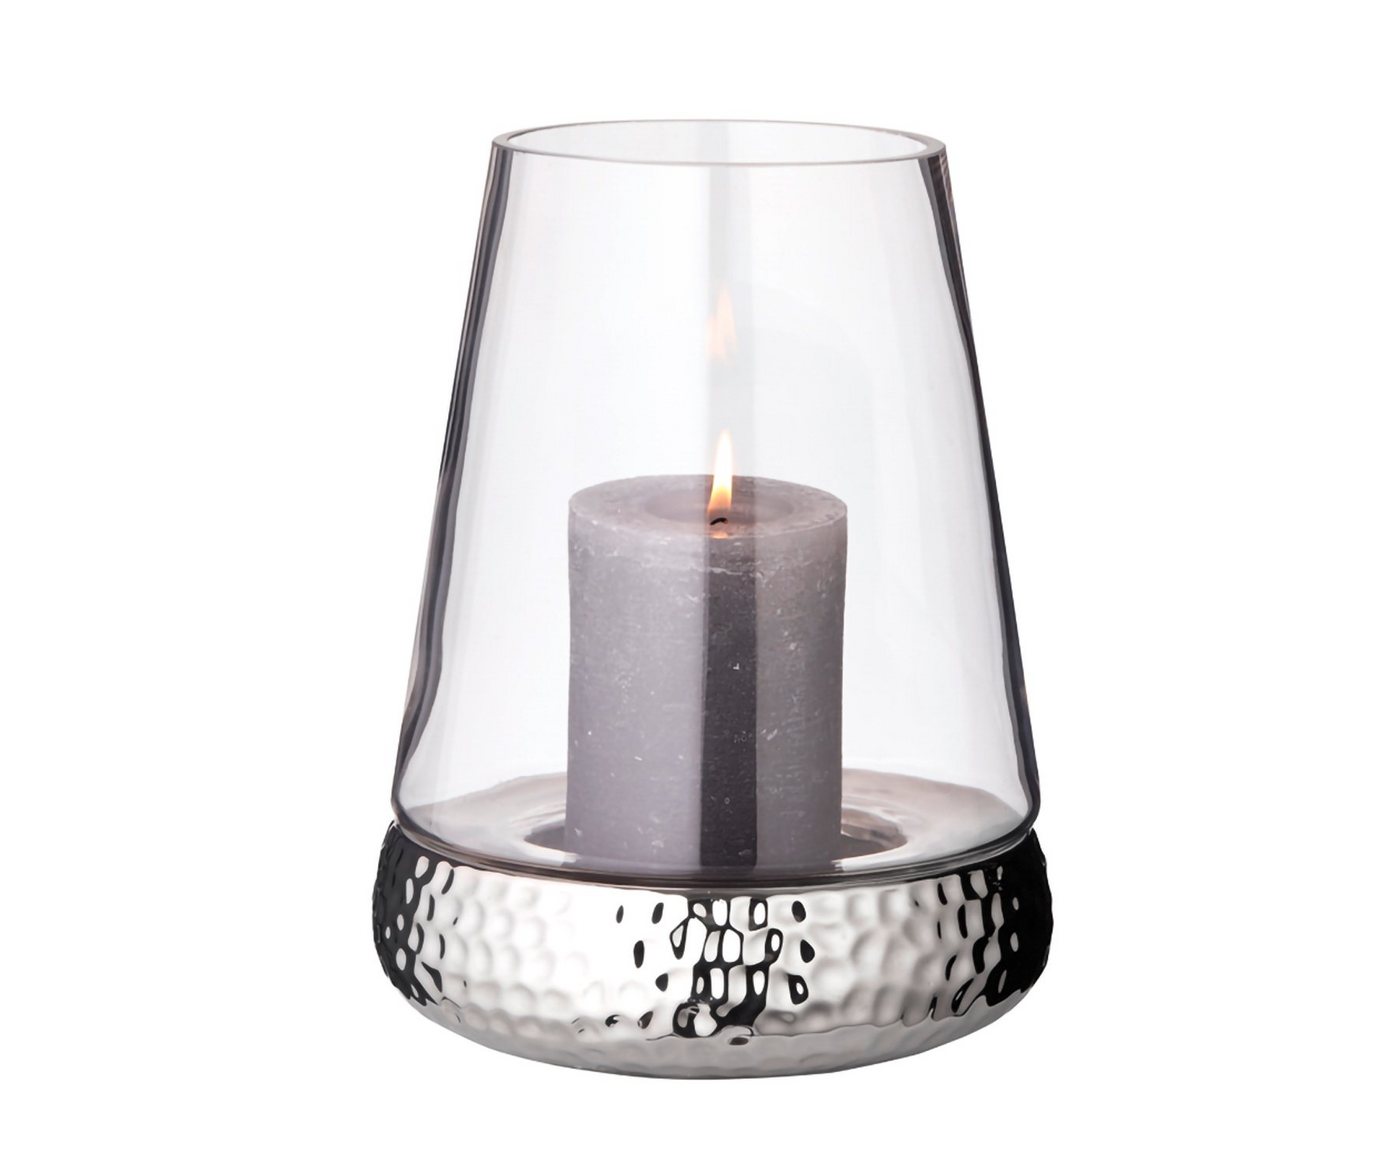 EDZARD Windlicht Bora, Kerzenhalter aus Glas mit gehämmerter Silber-Optik, Laterne für Stumpenkerzen, Höhe 28 cm, Ø 18 cm von EDZARD